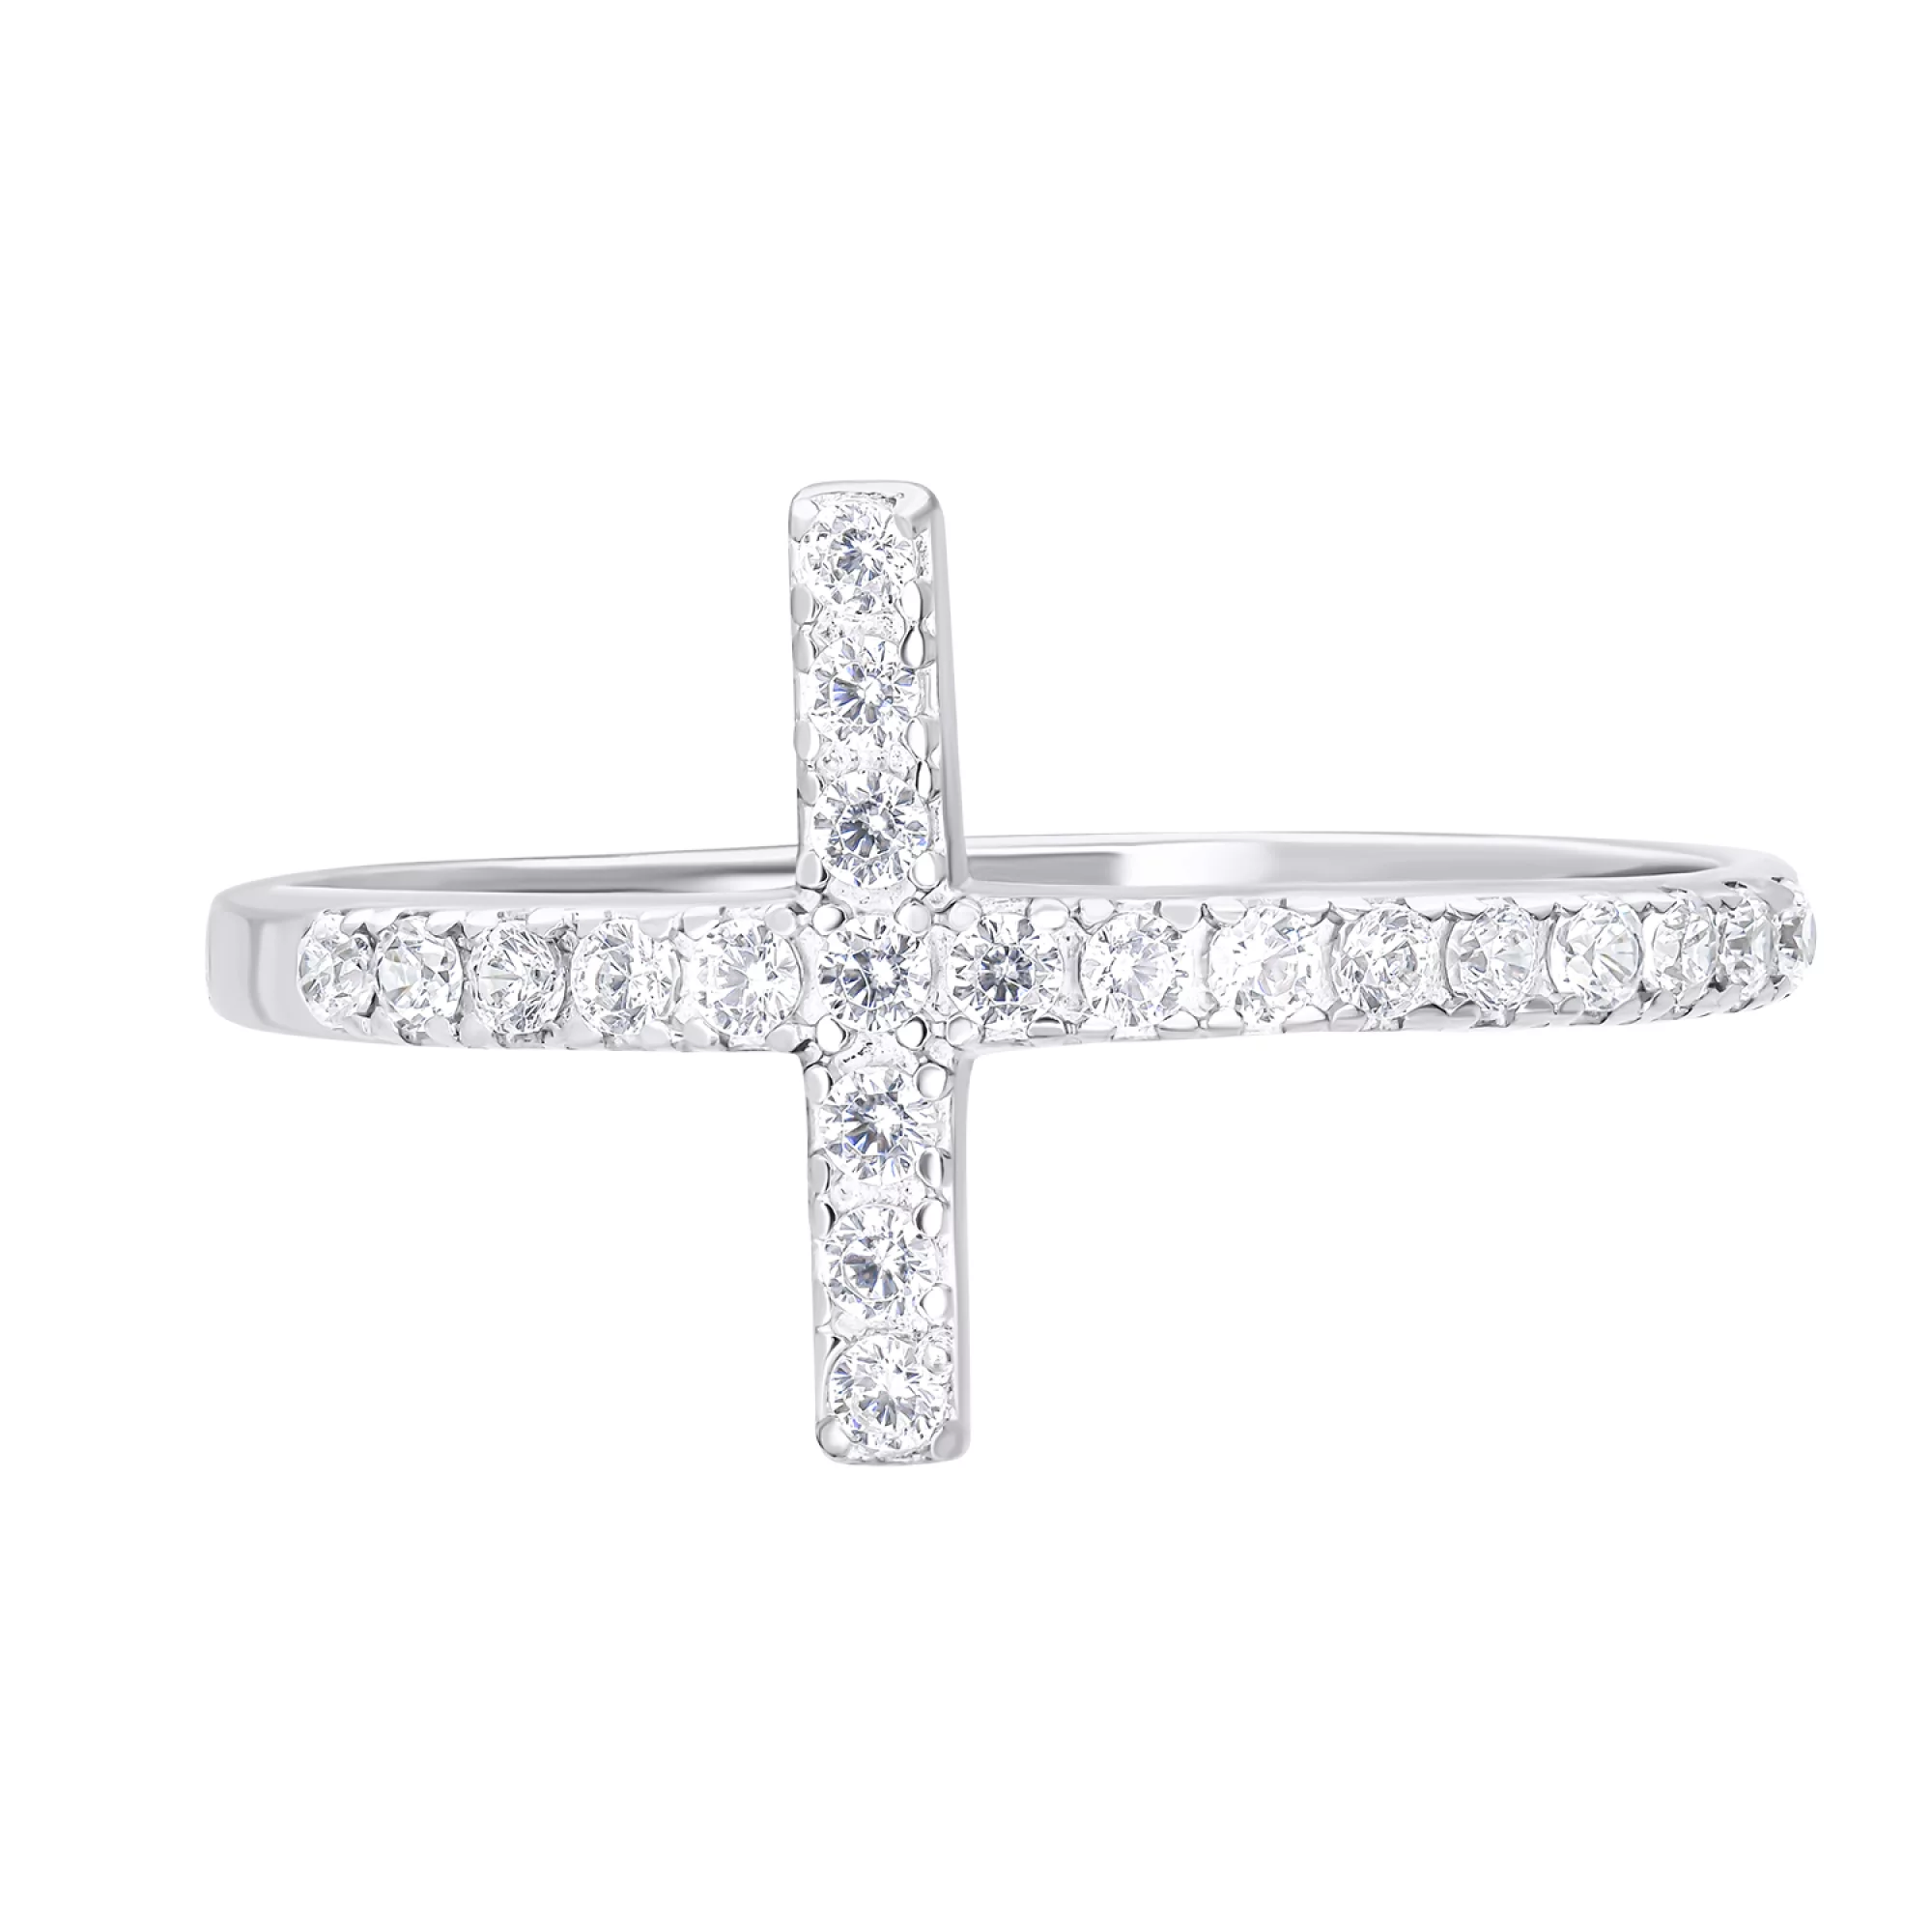 Срібна каблучка у формі хрестика з доріжкою фіанітів  - 1549832 – зображення 2